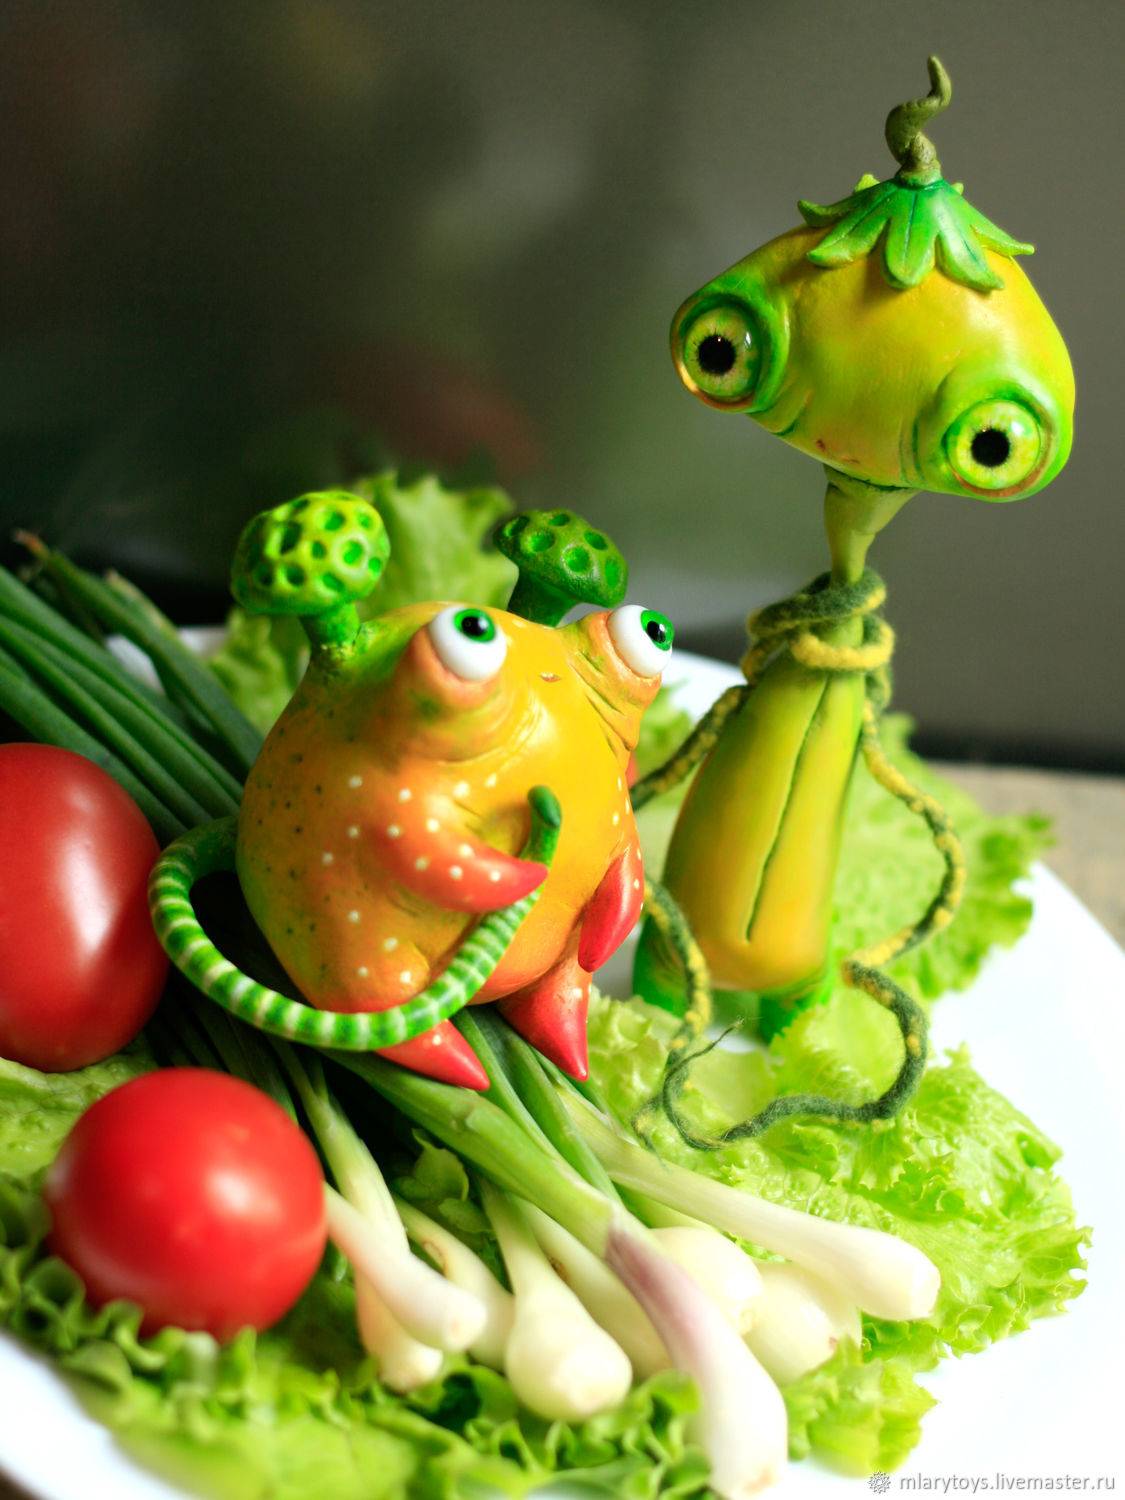 Поделка из овощей: выбор овощей, поэтапная инструкция изготовления поделок, идеи простых изделий для детей (фото + видео)